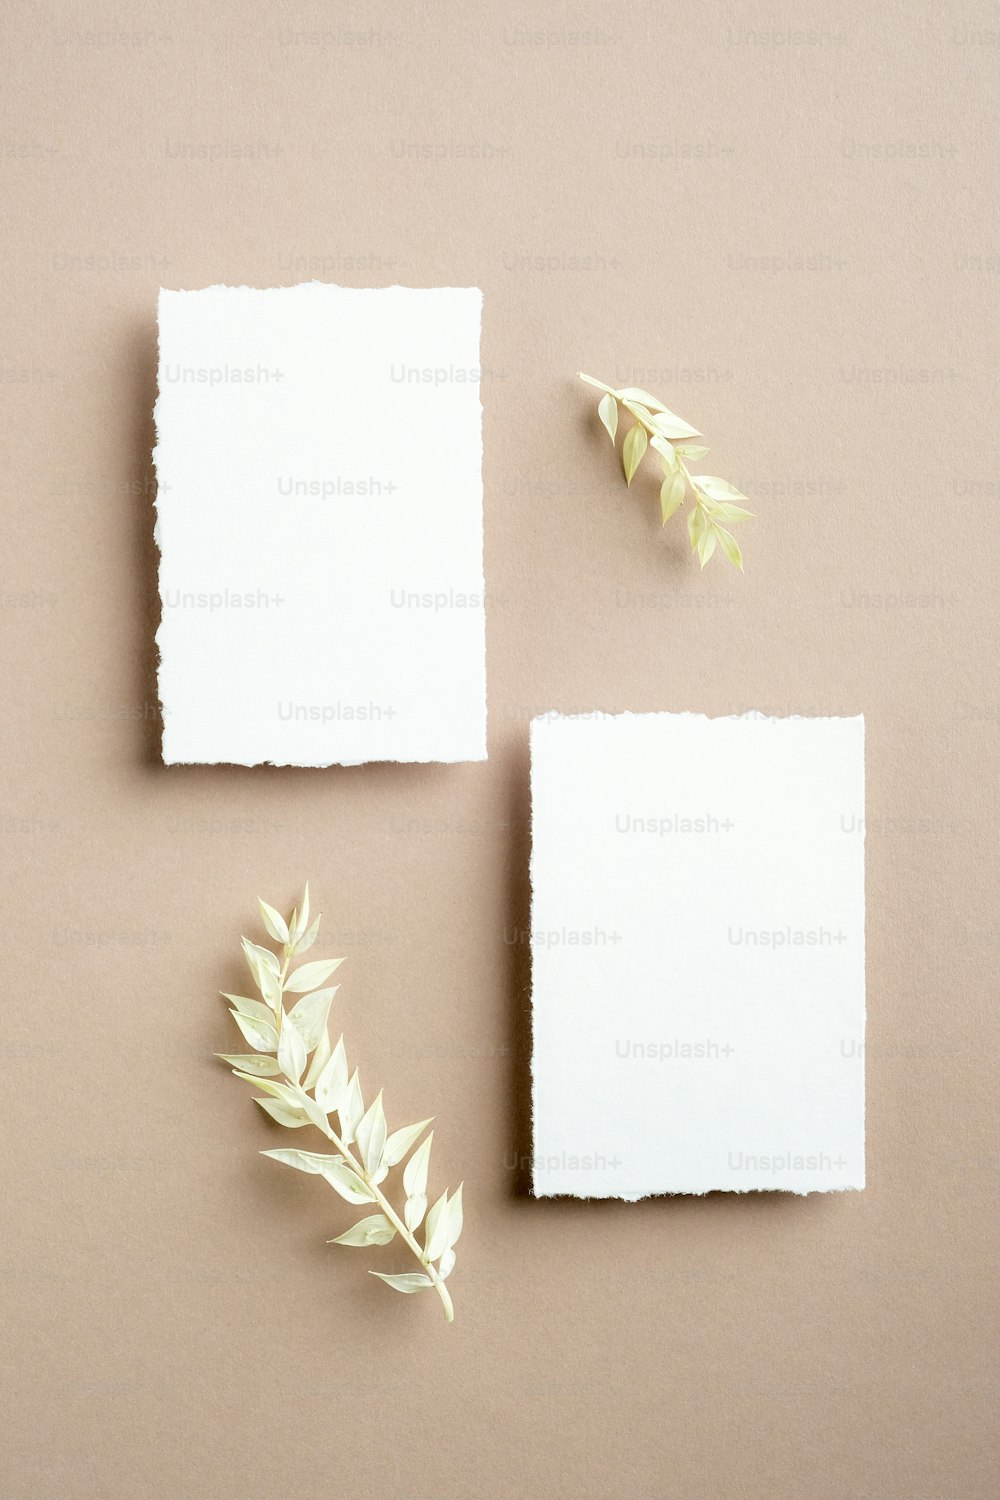 Cartões de convite em branco. Flat lay, vista superior. Maquetes de papelaria de casamento brancas vazias com folhas secas no fundo bege pastel.